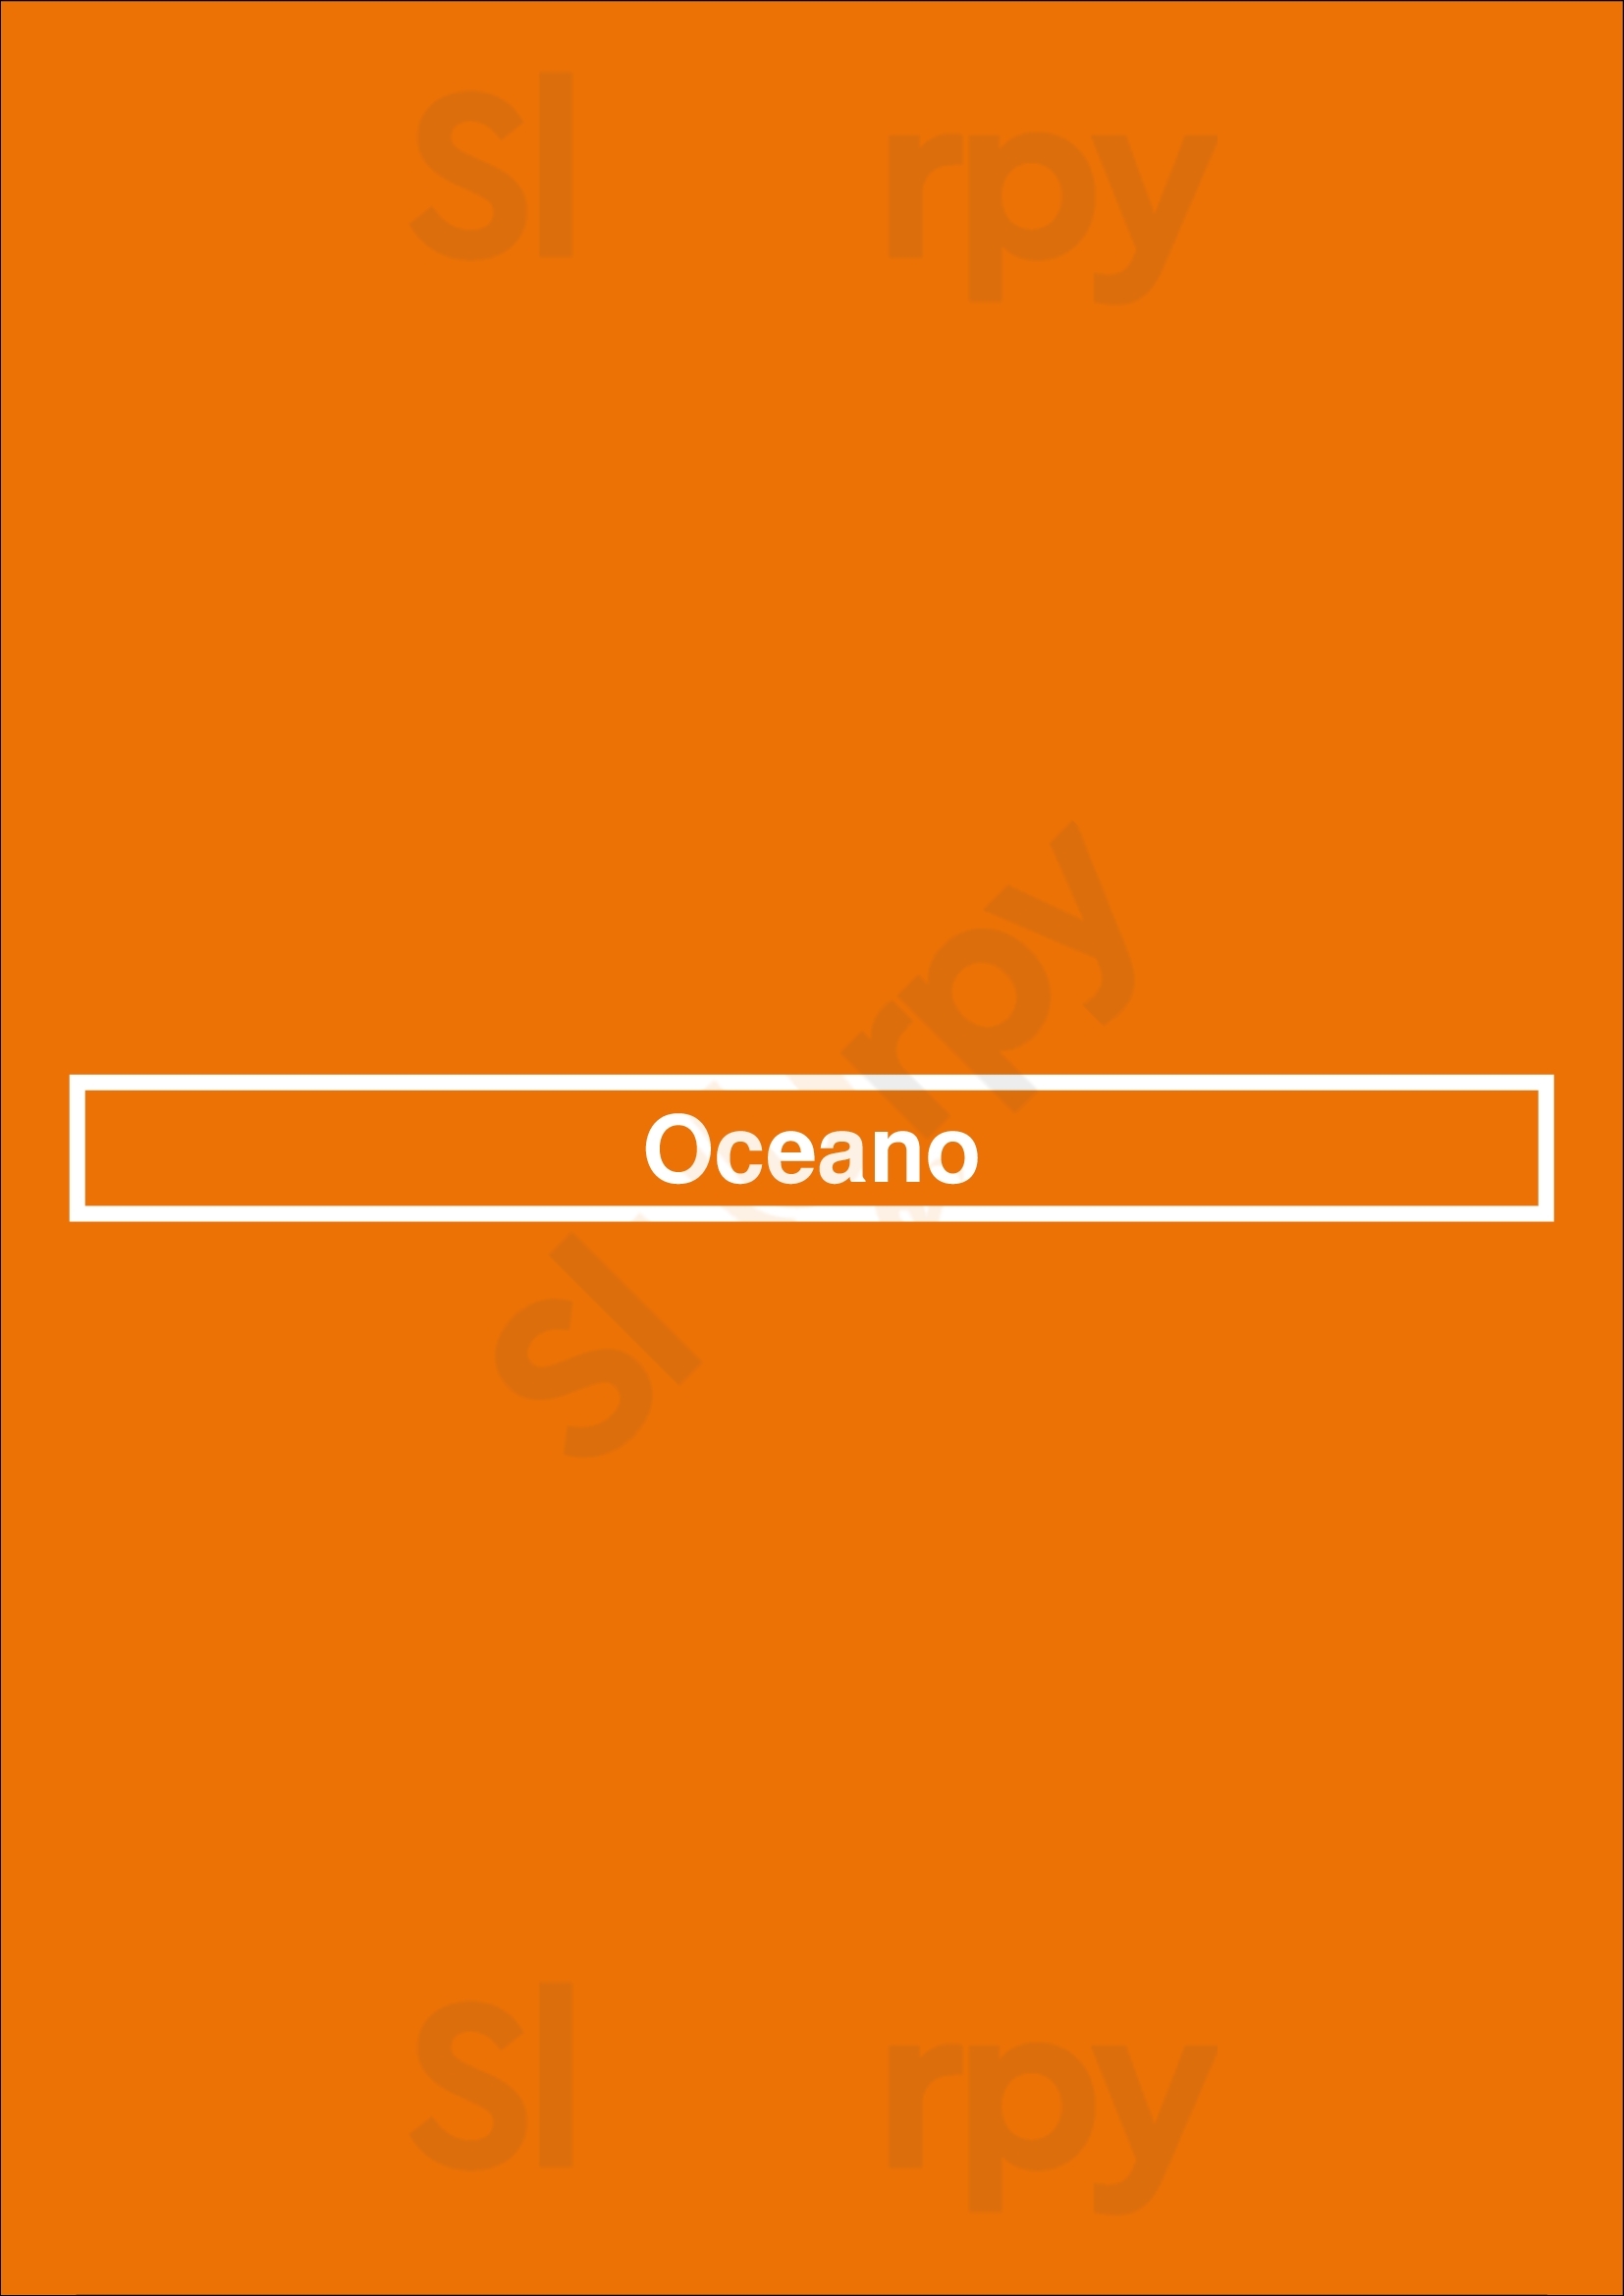 Oceano San Juan Menu - 1